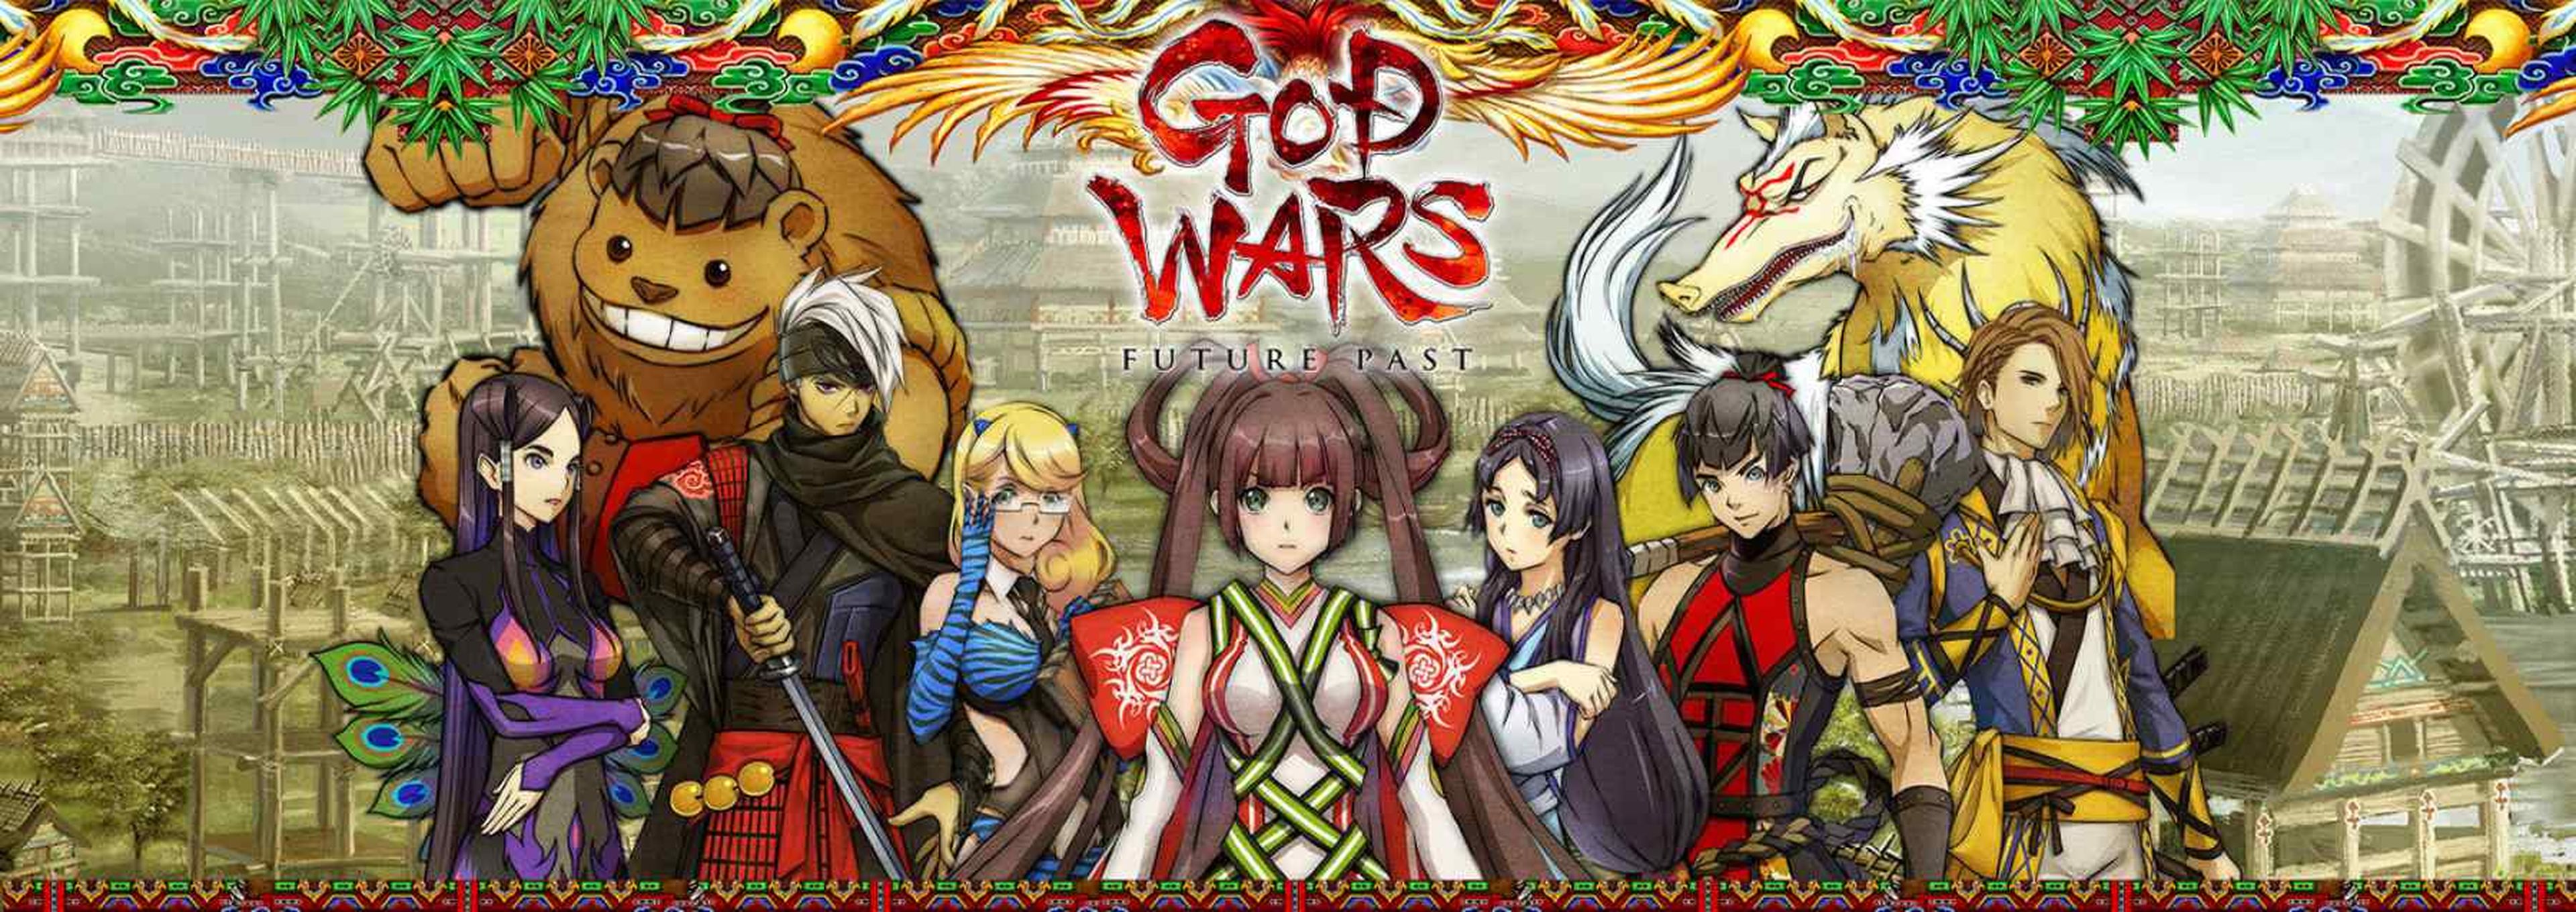 God Wars